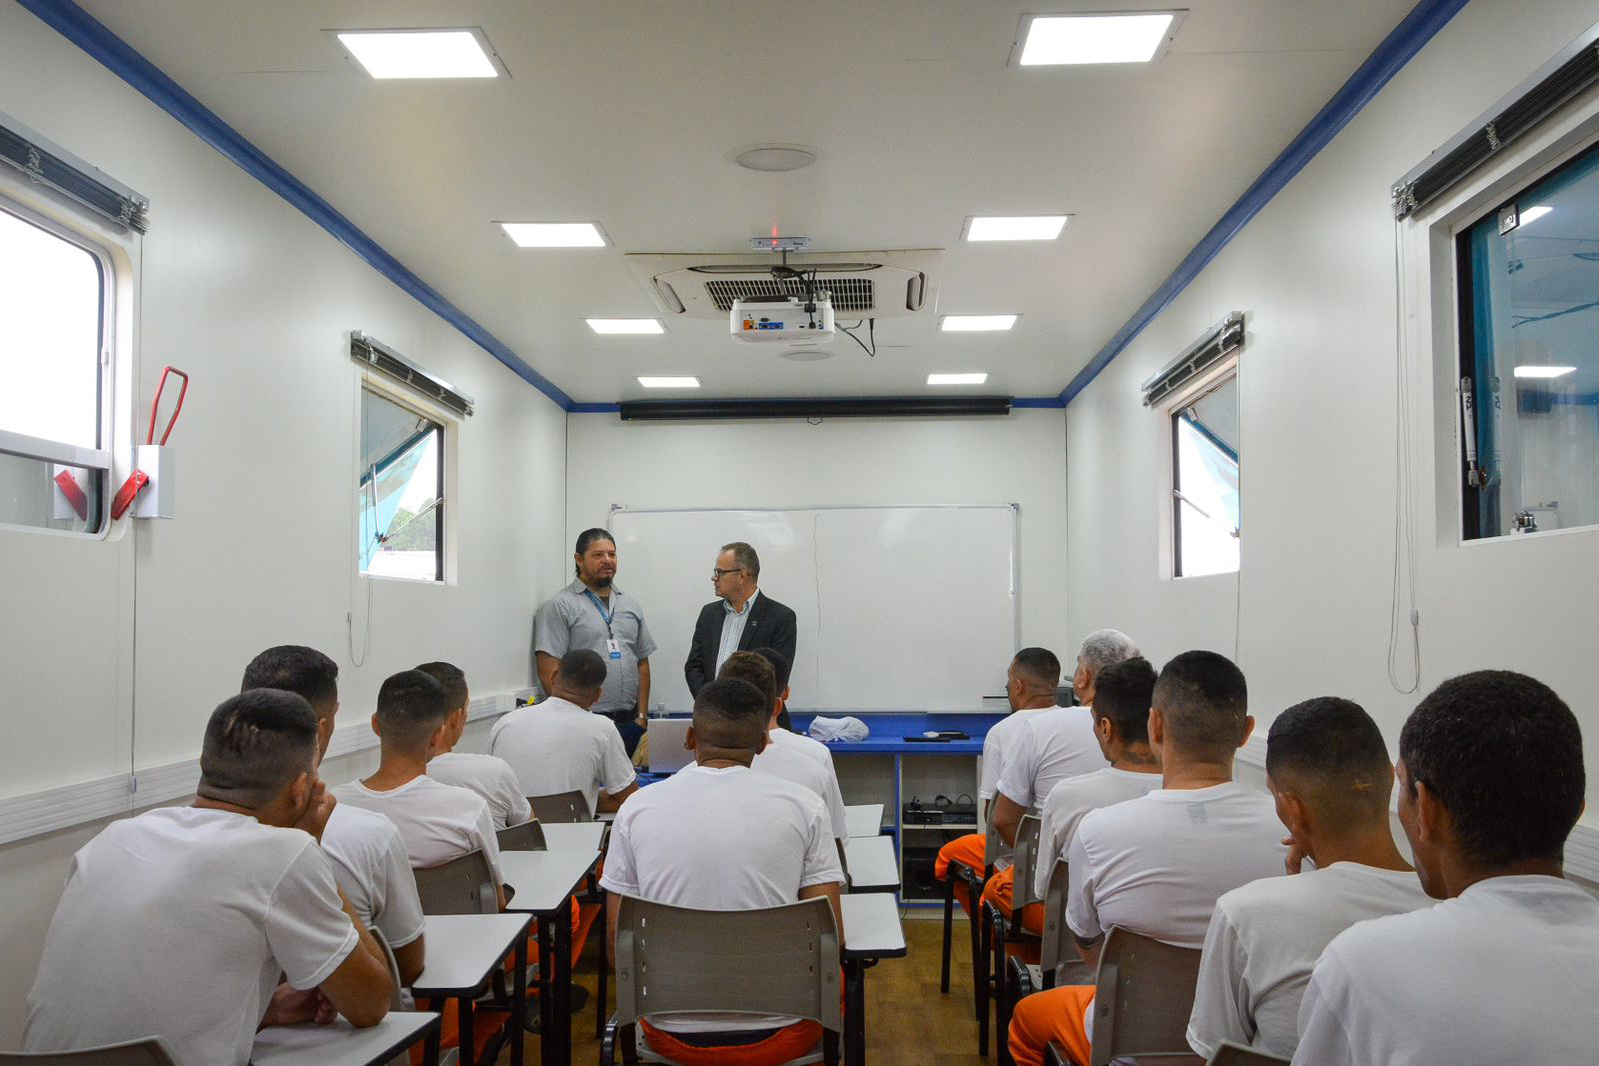 Com apoio do Senai, projeto educacional vai levar capacitação a custodiados no Paraná